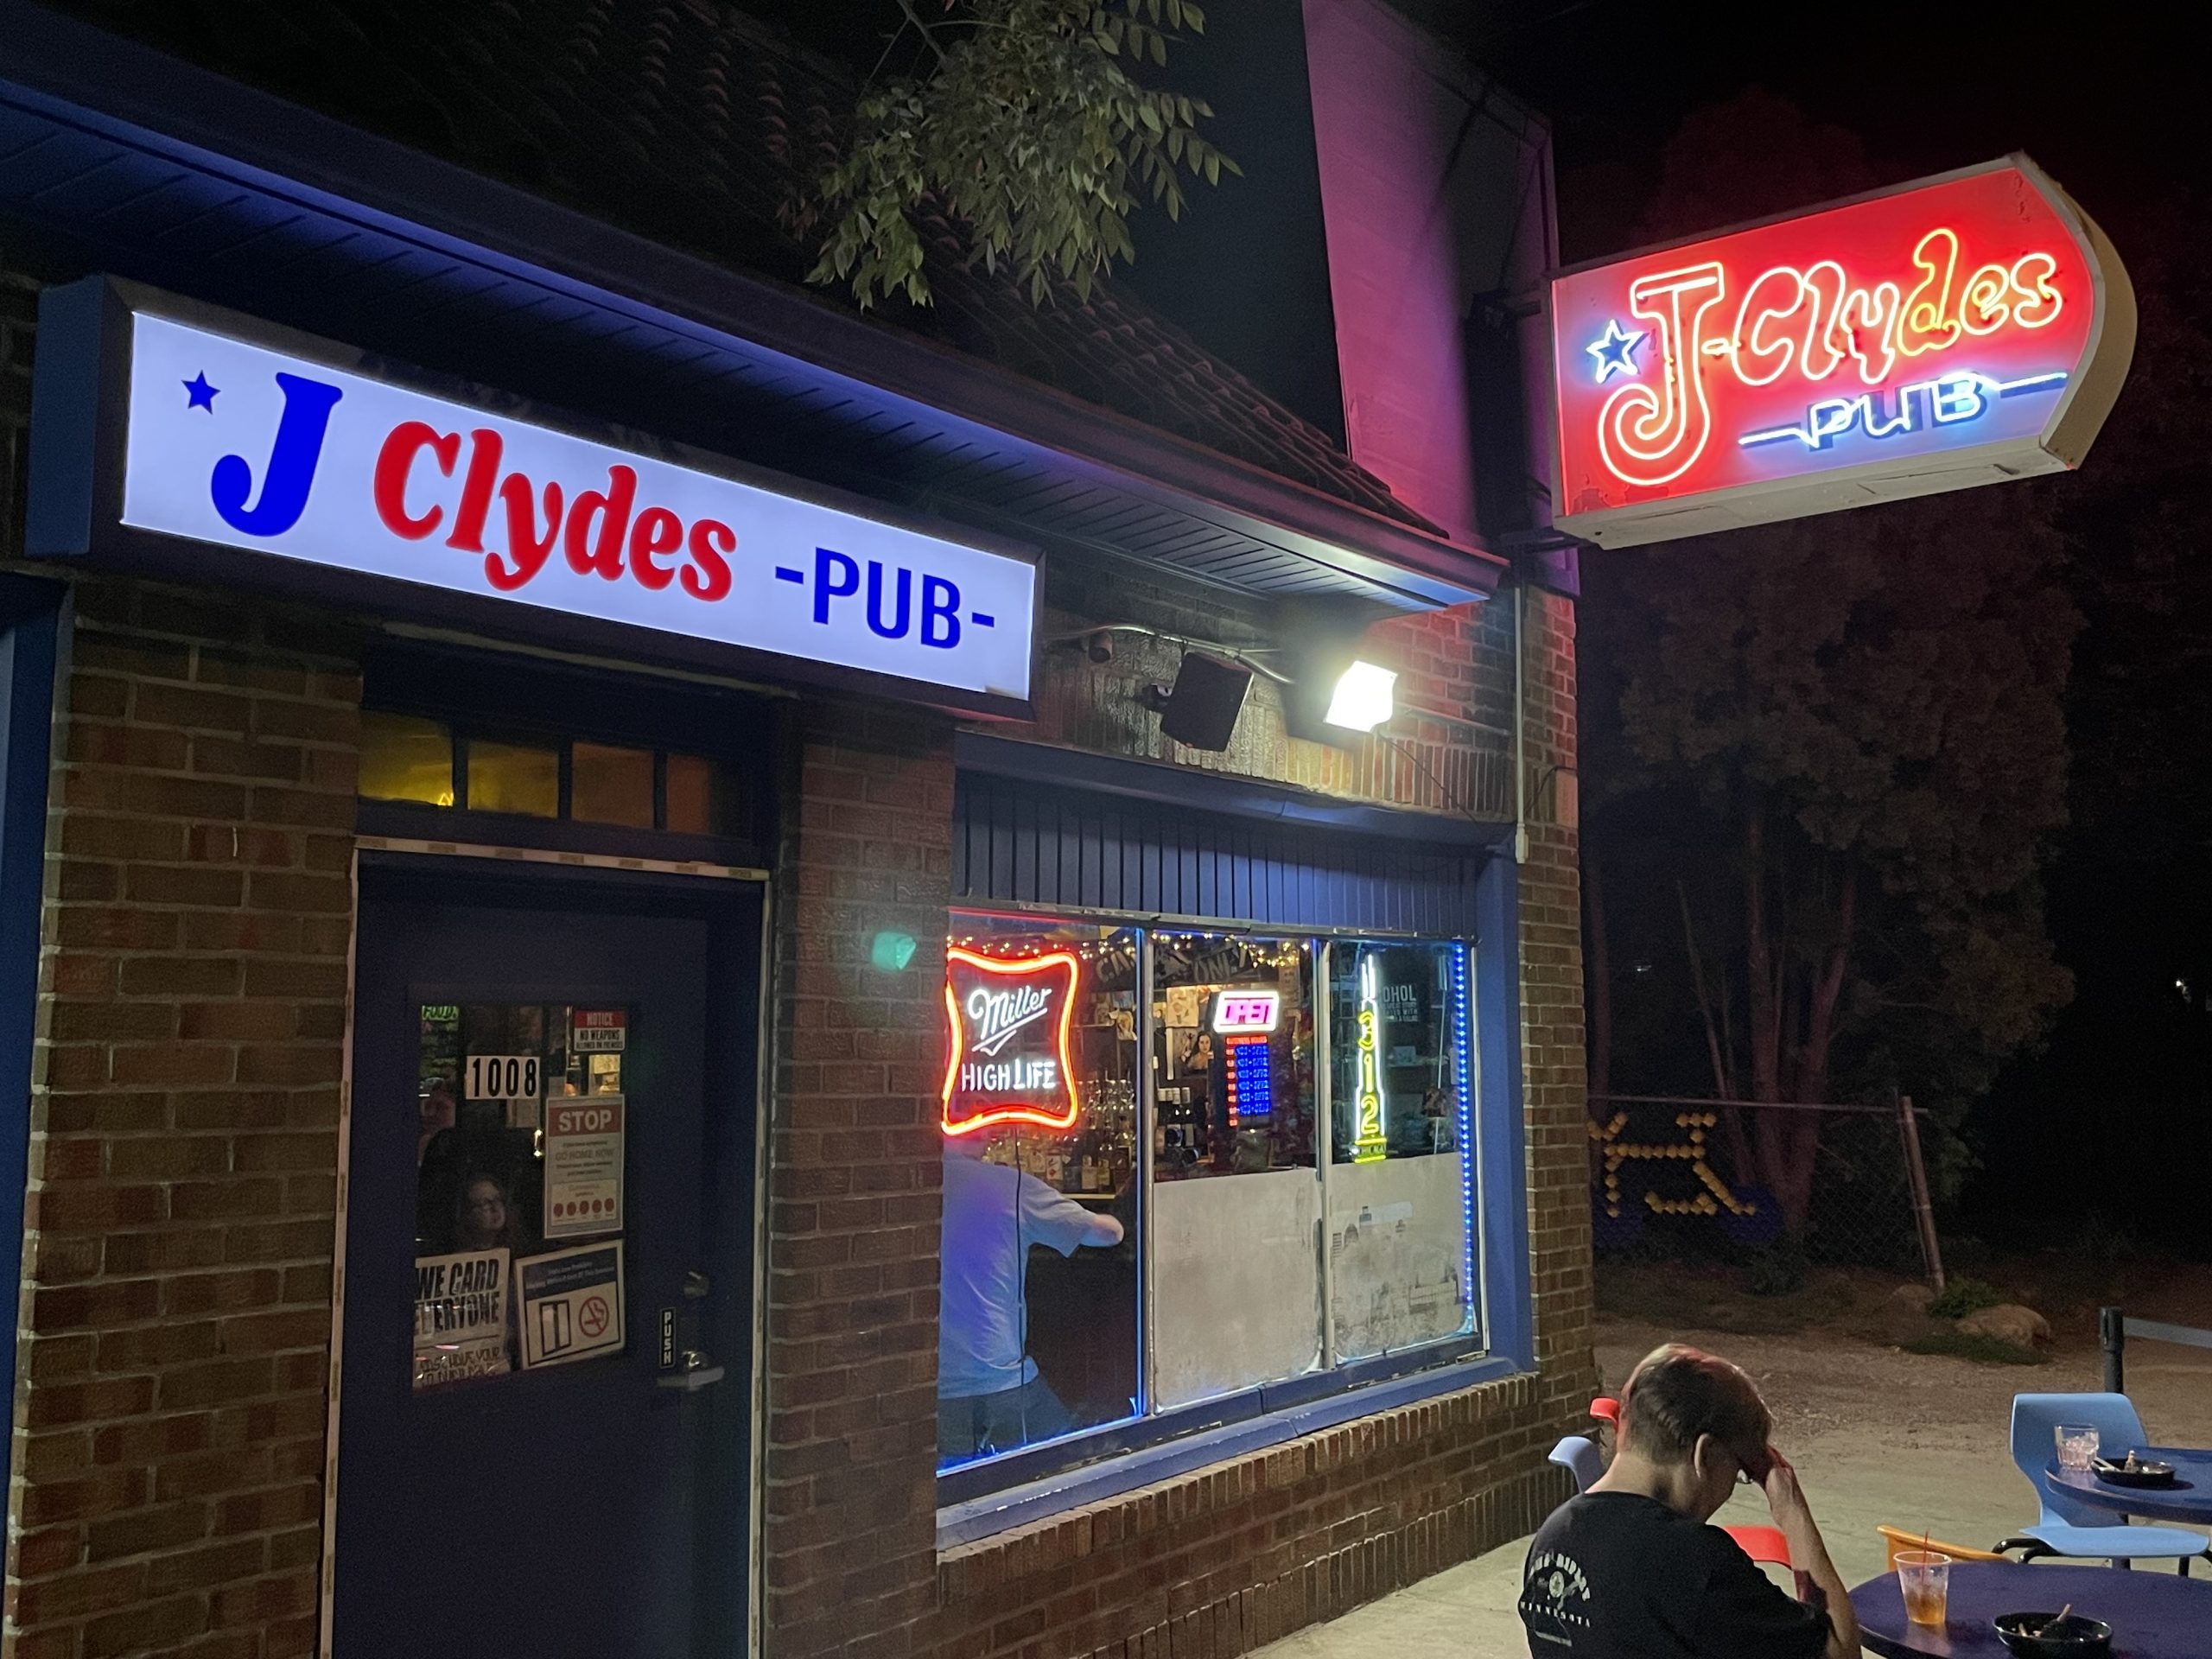 J Clyde's Pub - Indianapolis Dive Bar - Exterior Signs